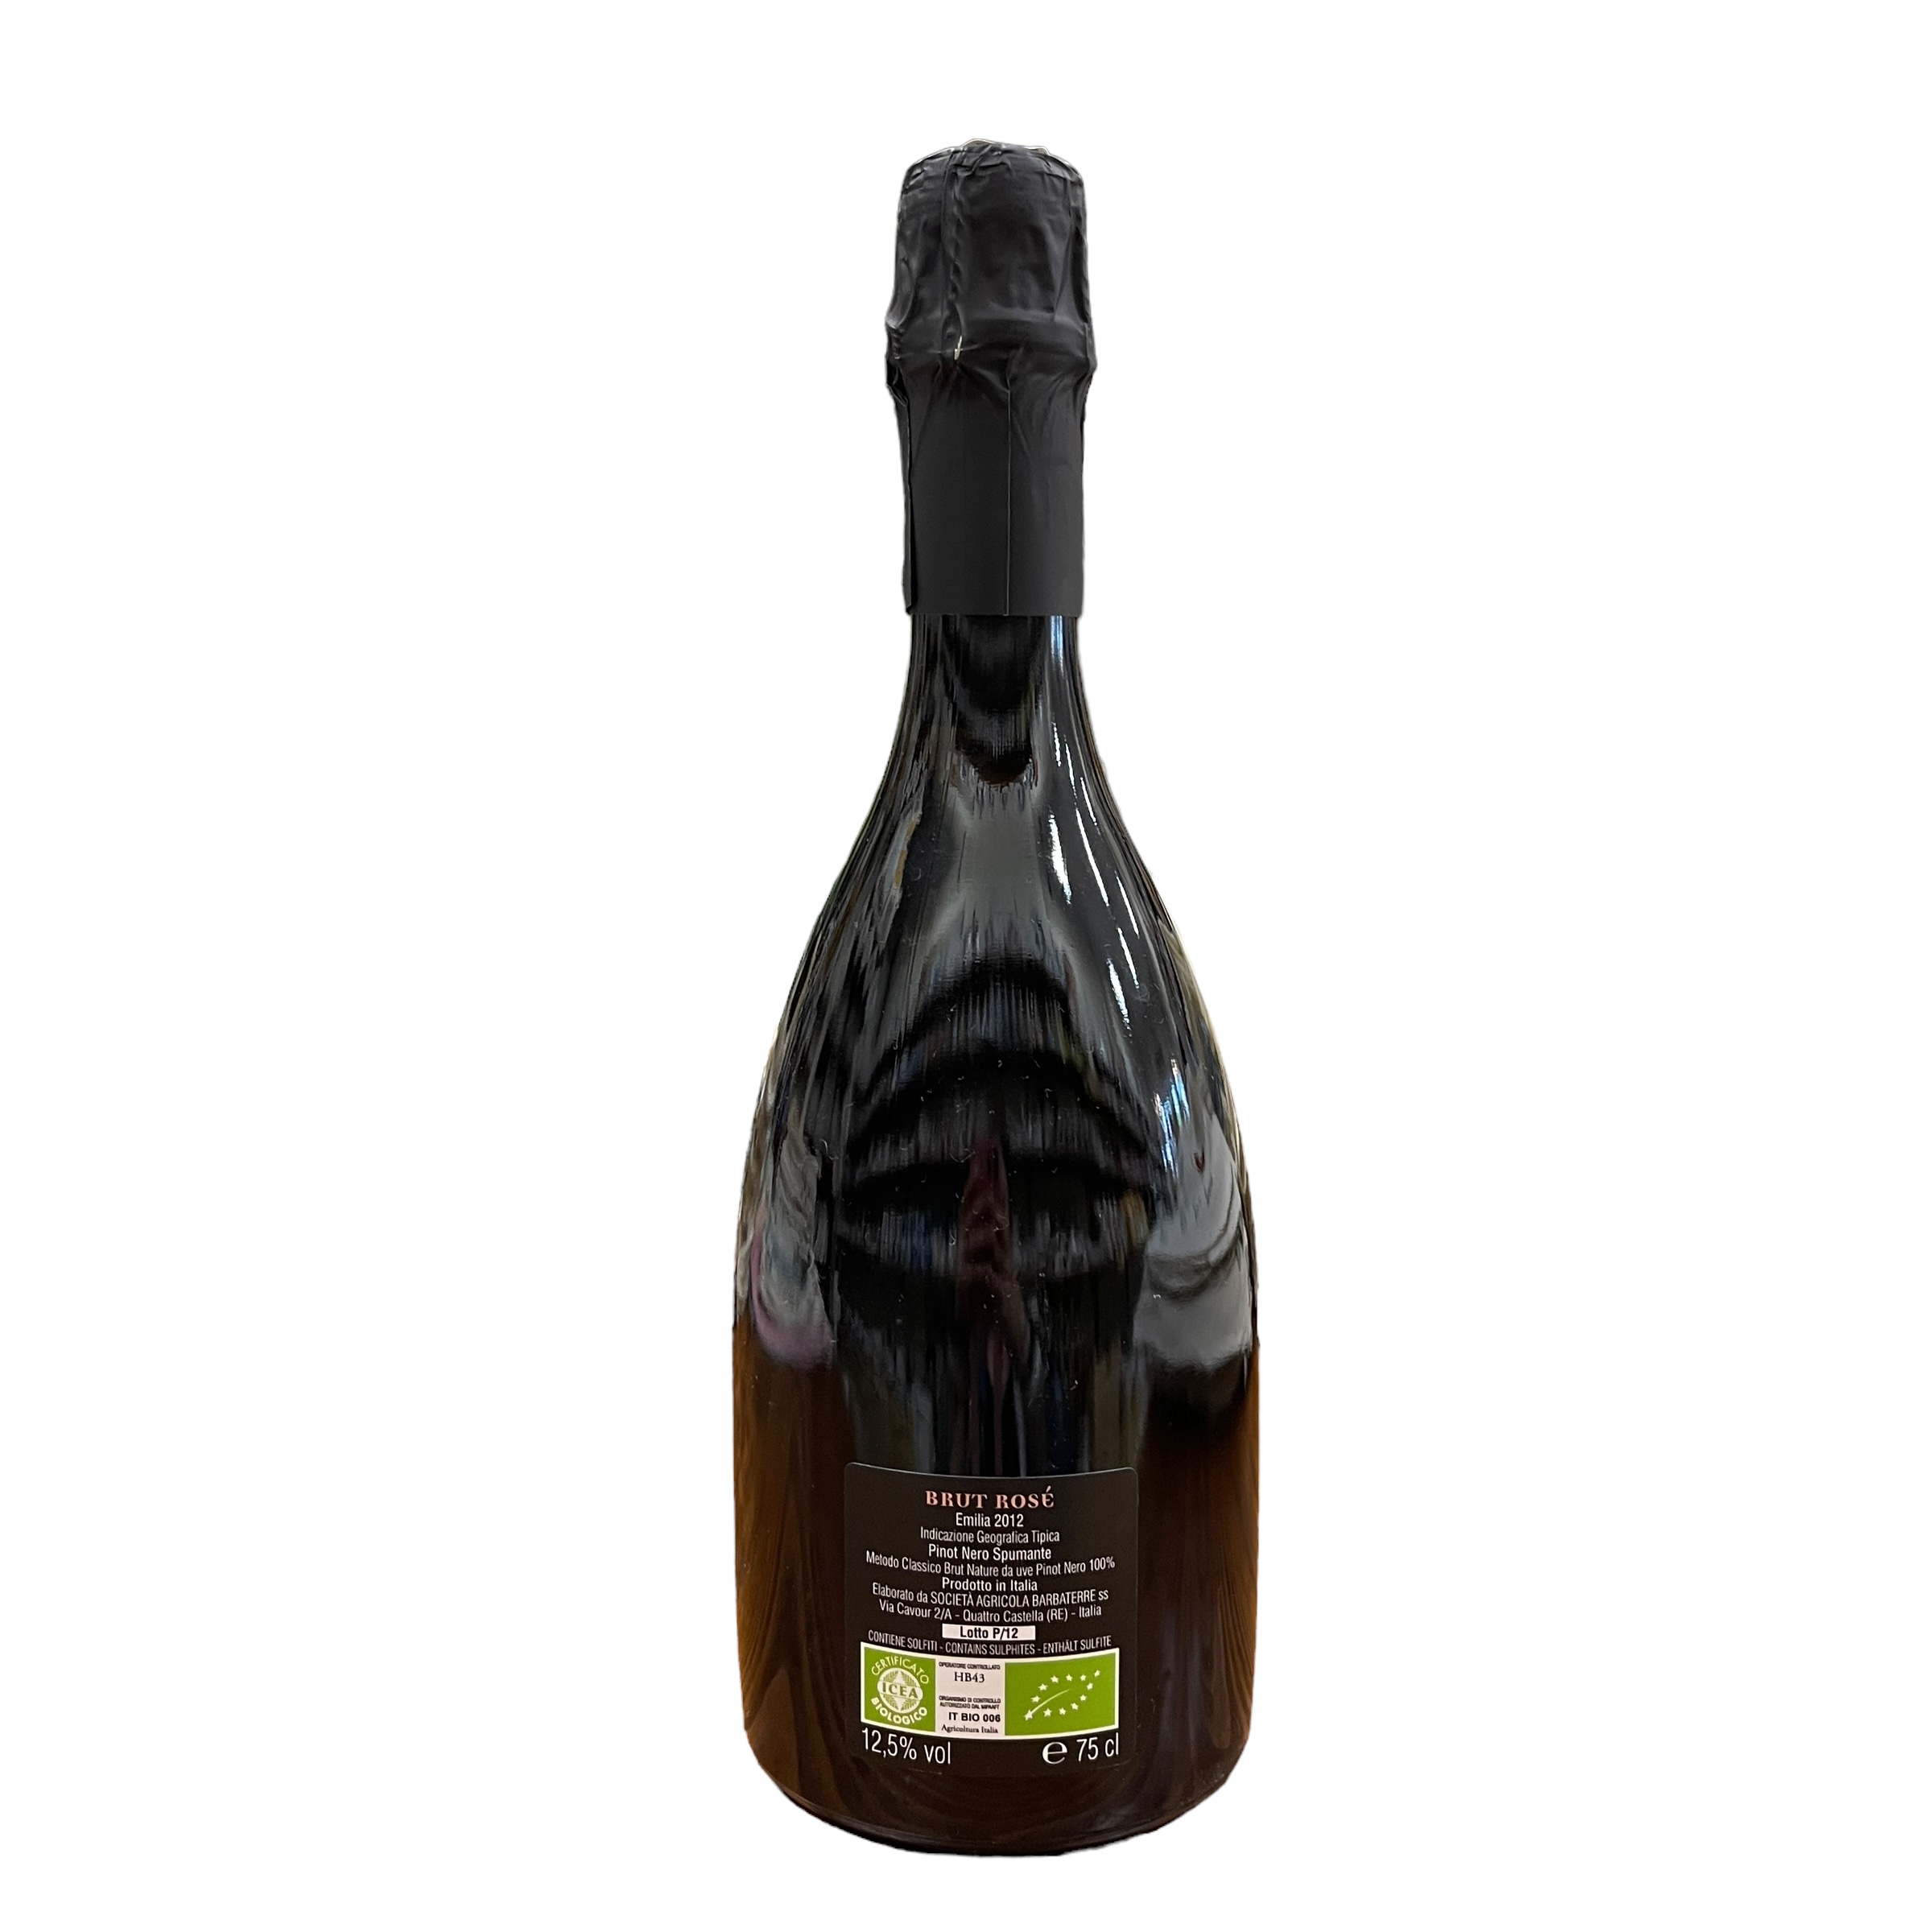 Barbaterre Brut Rosè Pinot Nero Metodo Classico 2012 12,5% Vol 75 cl